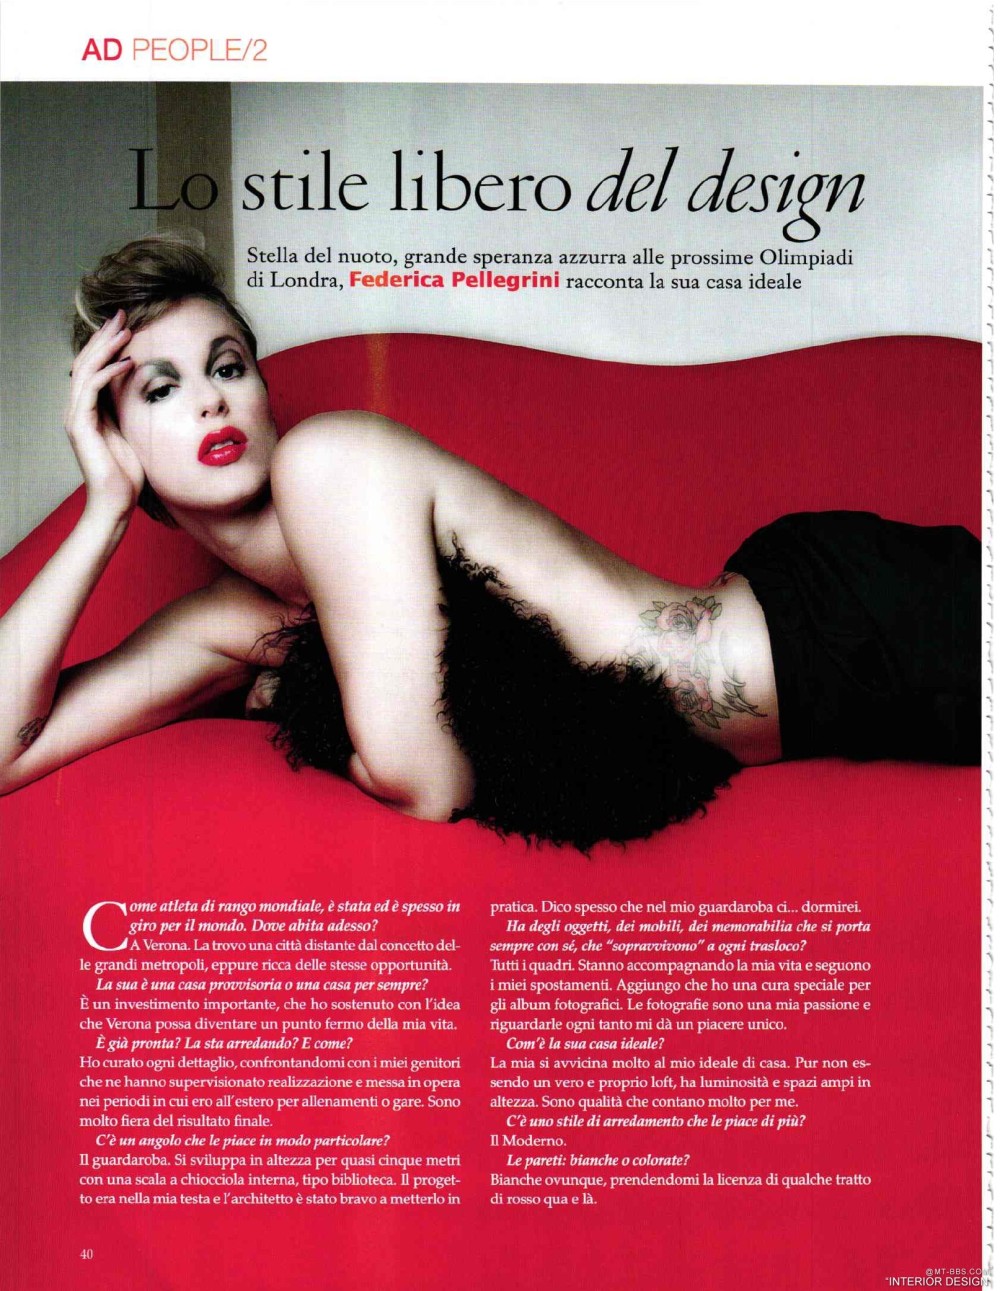 意大利AD 杂志 2012年全年JPG高清版本 全免（上传完毕）_0042.jpg